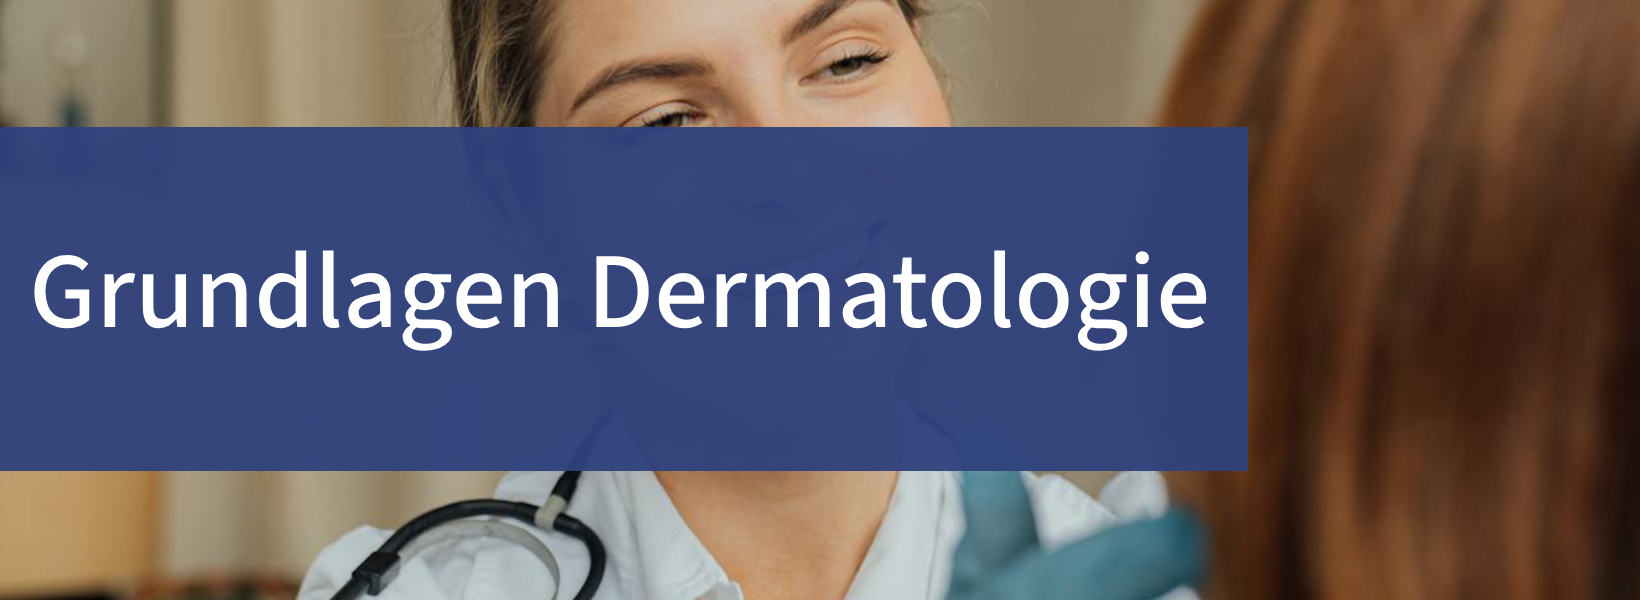 Facharztausbildung Dermatologie